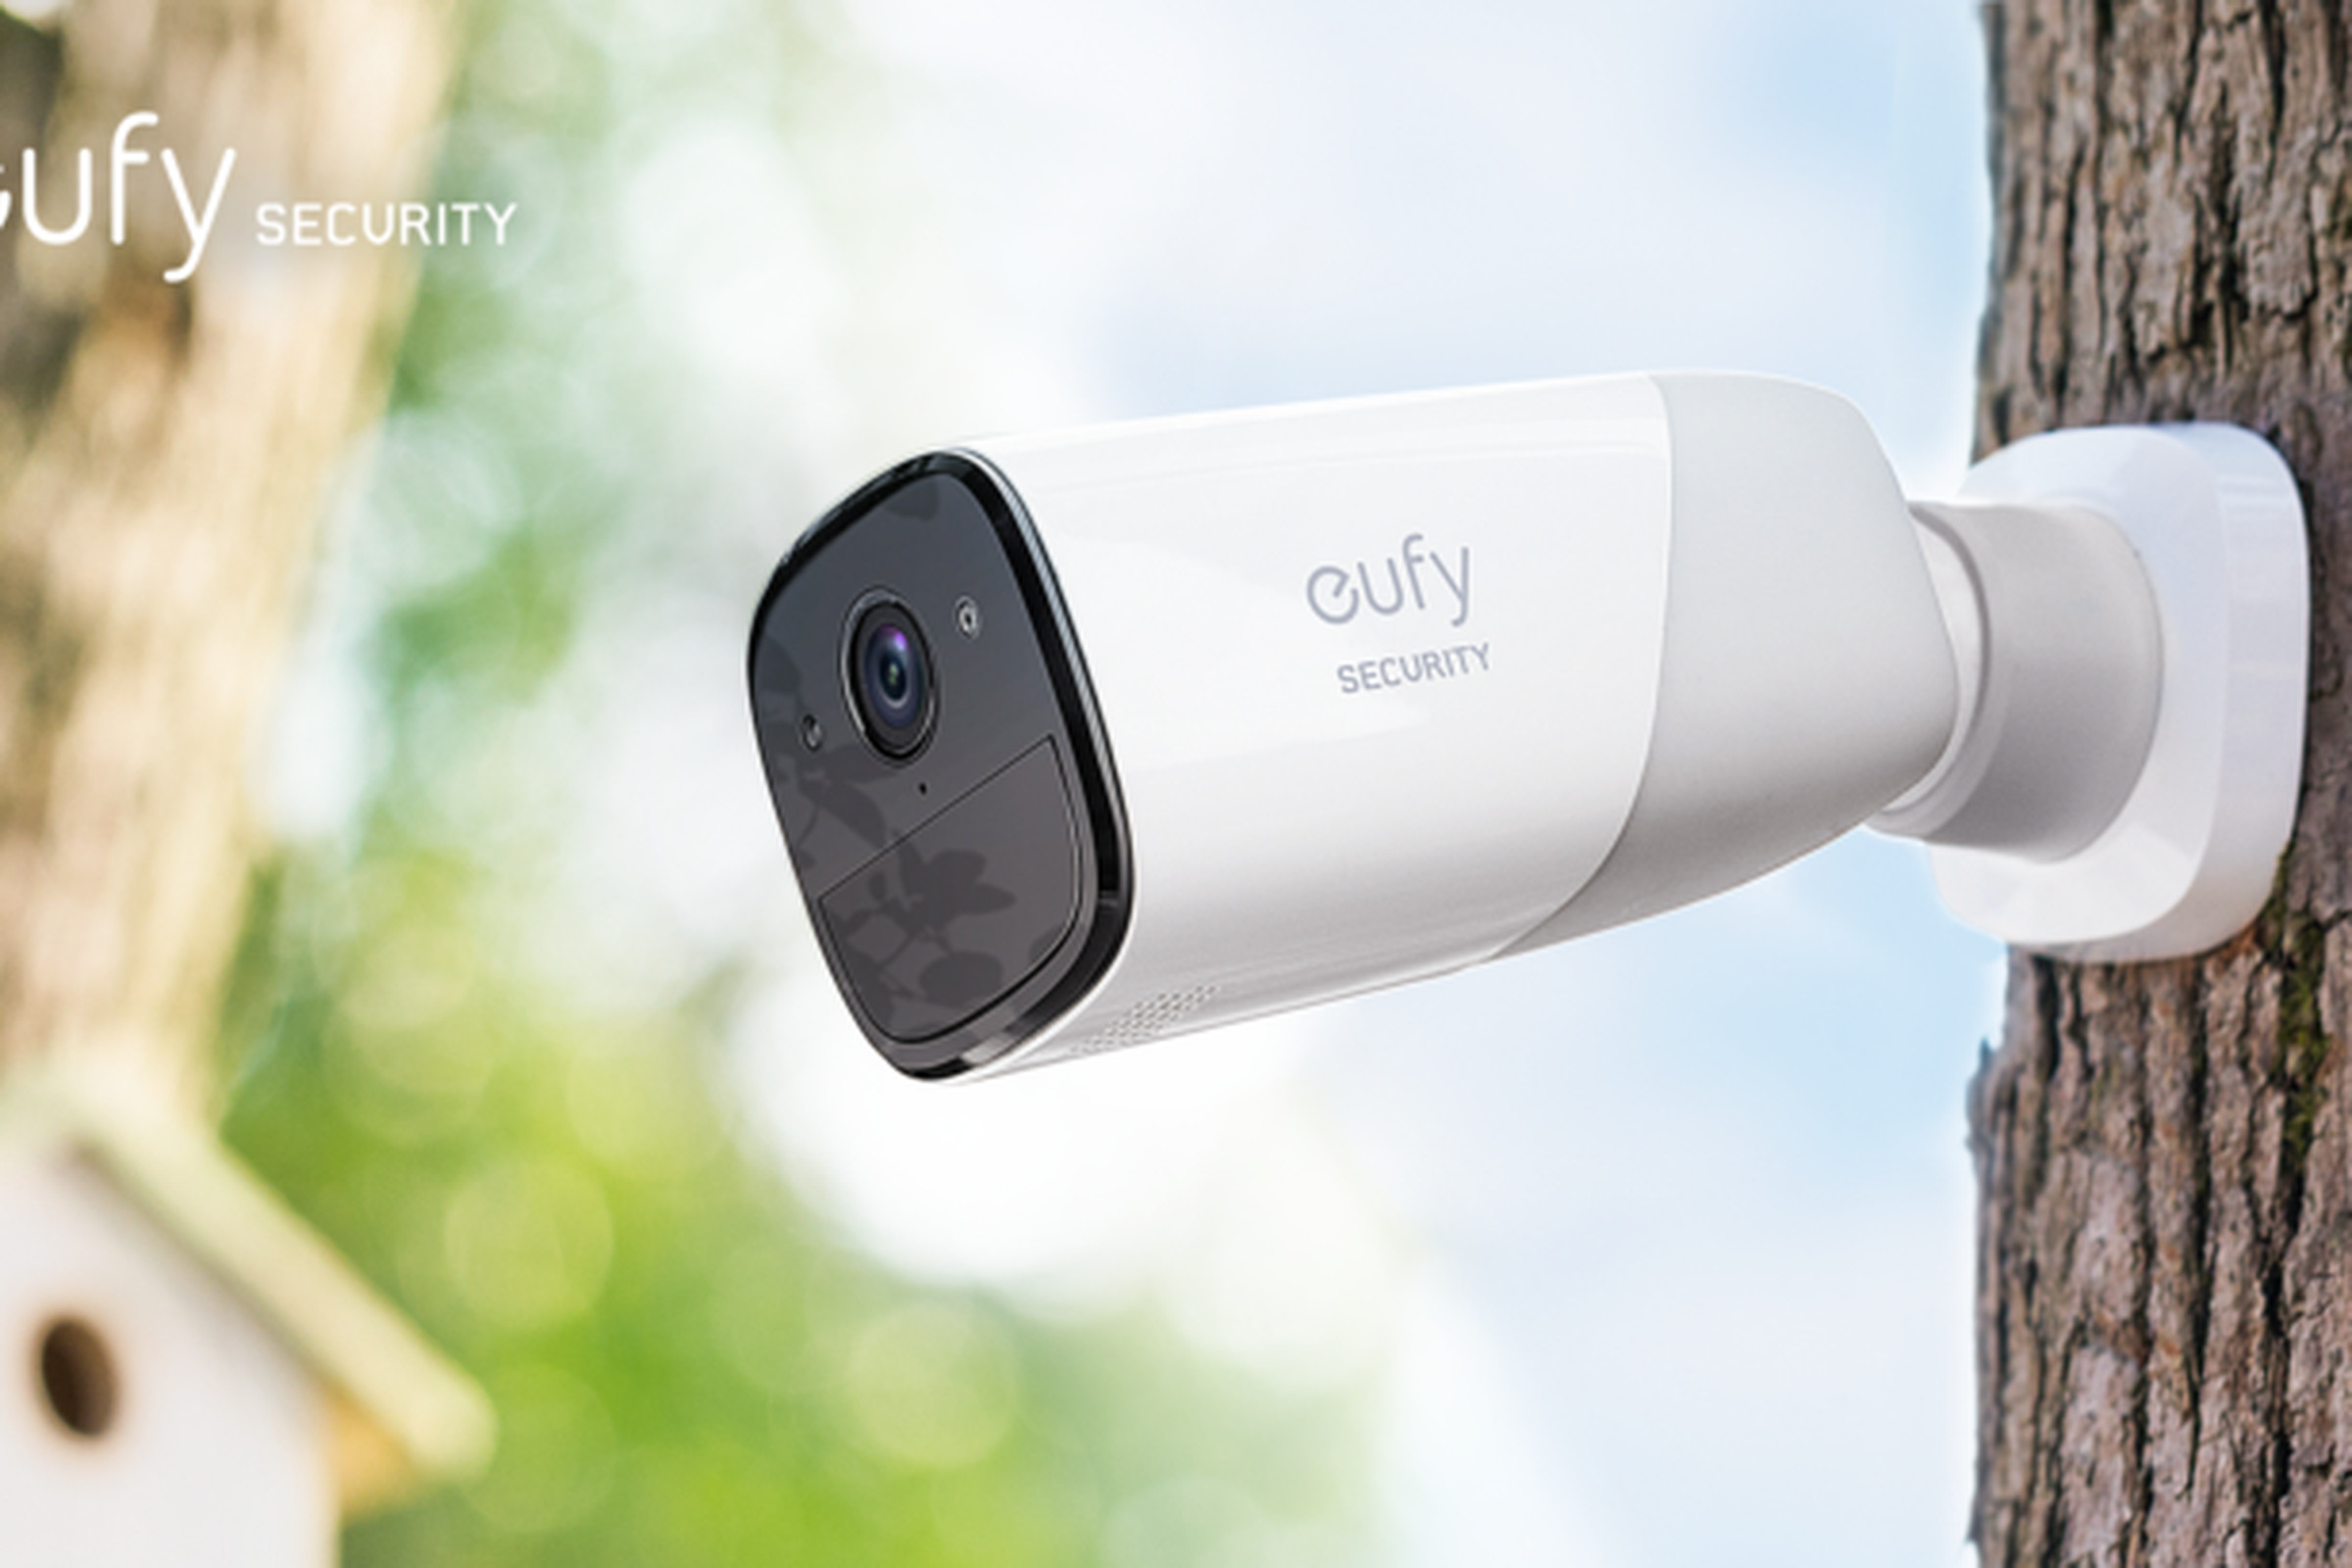 Eufy’s home security camera